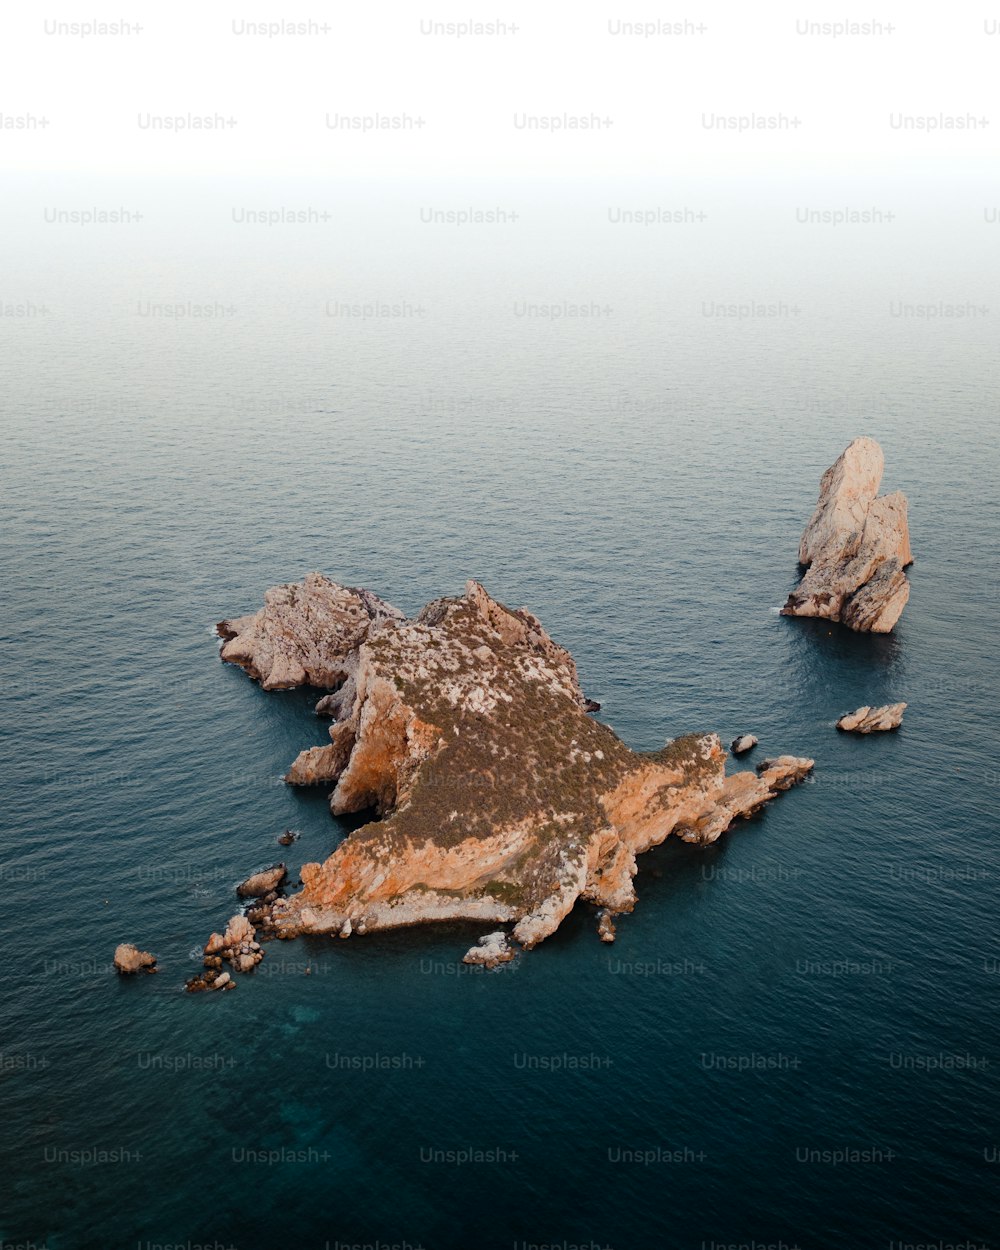 Un'isola in mezzo all'oceano